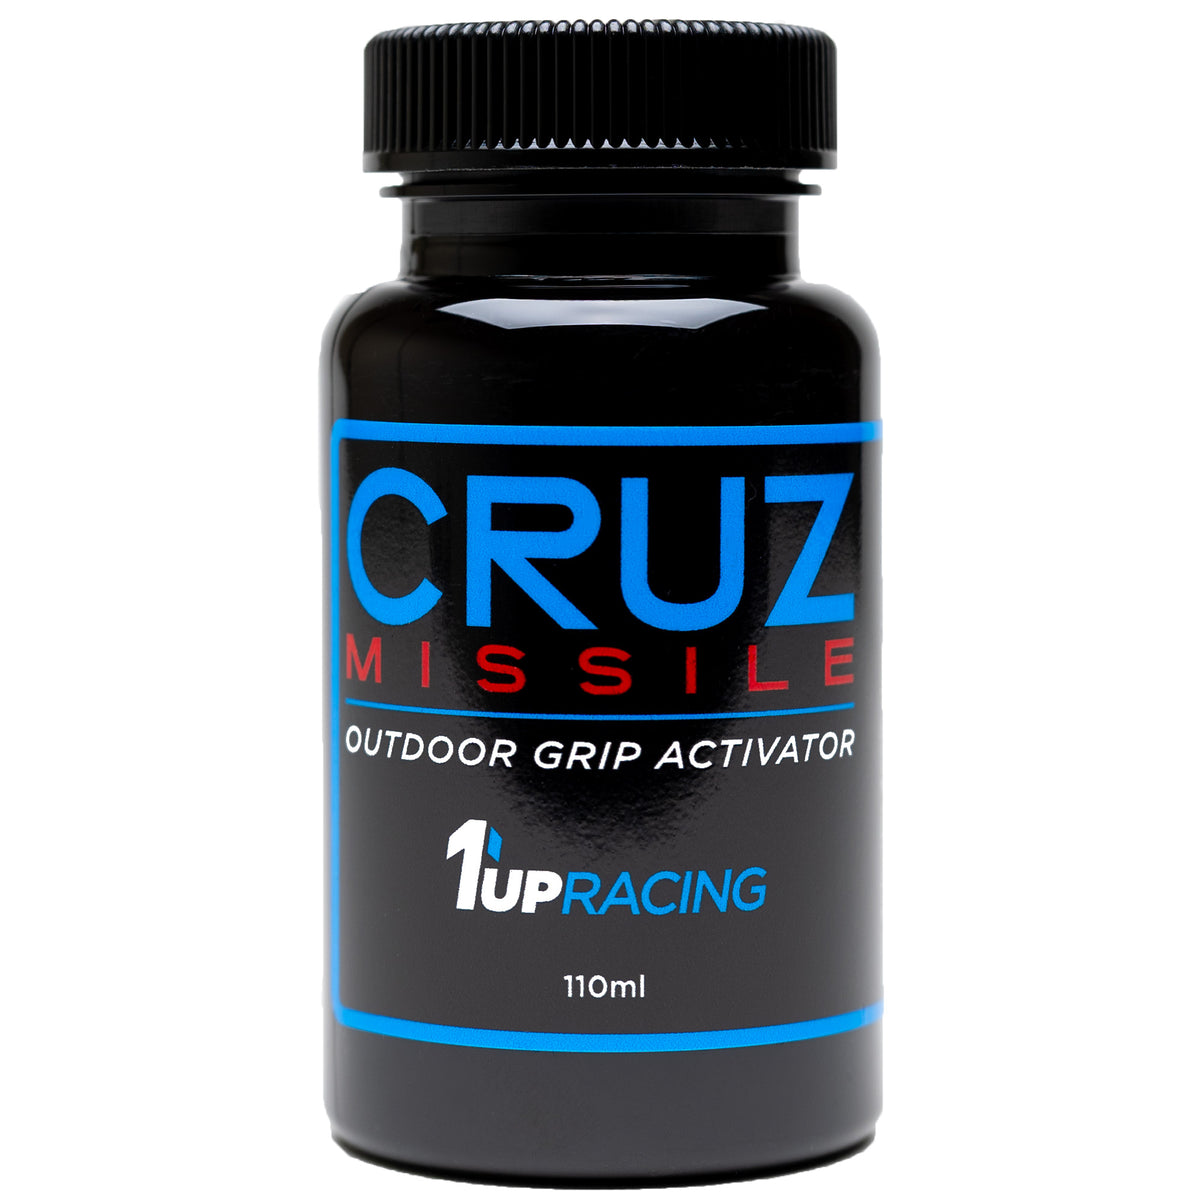 1up Racing Cruz Missile Outdoor Grip Activator